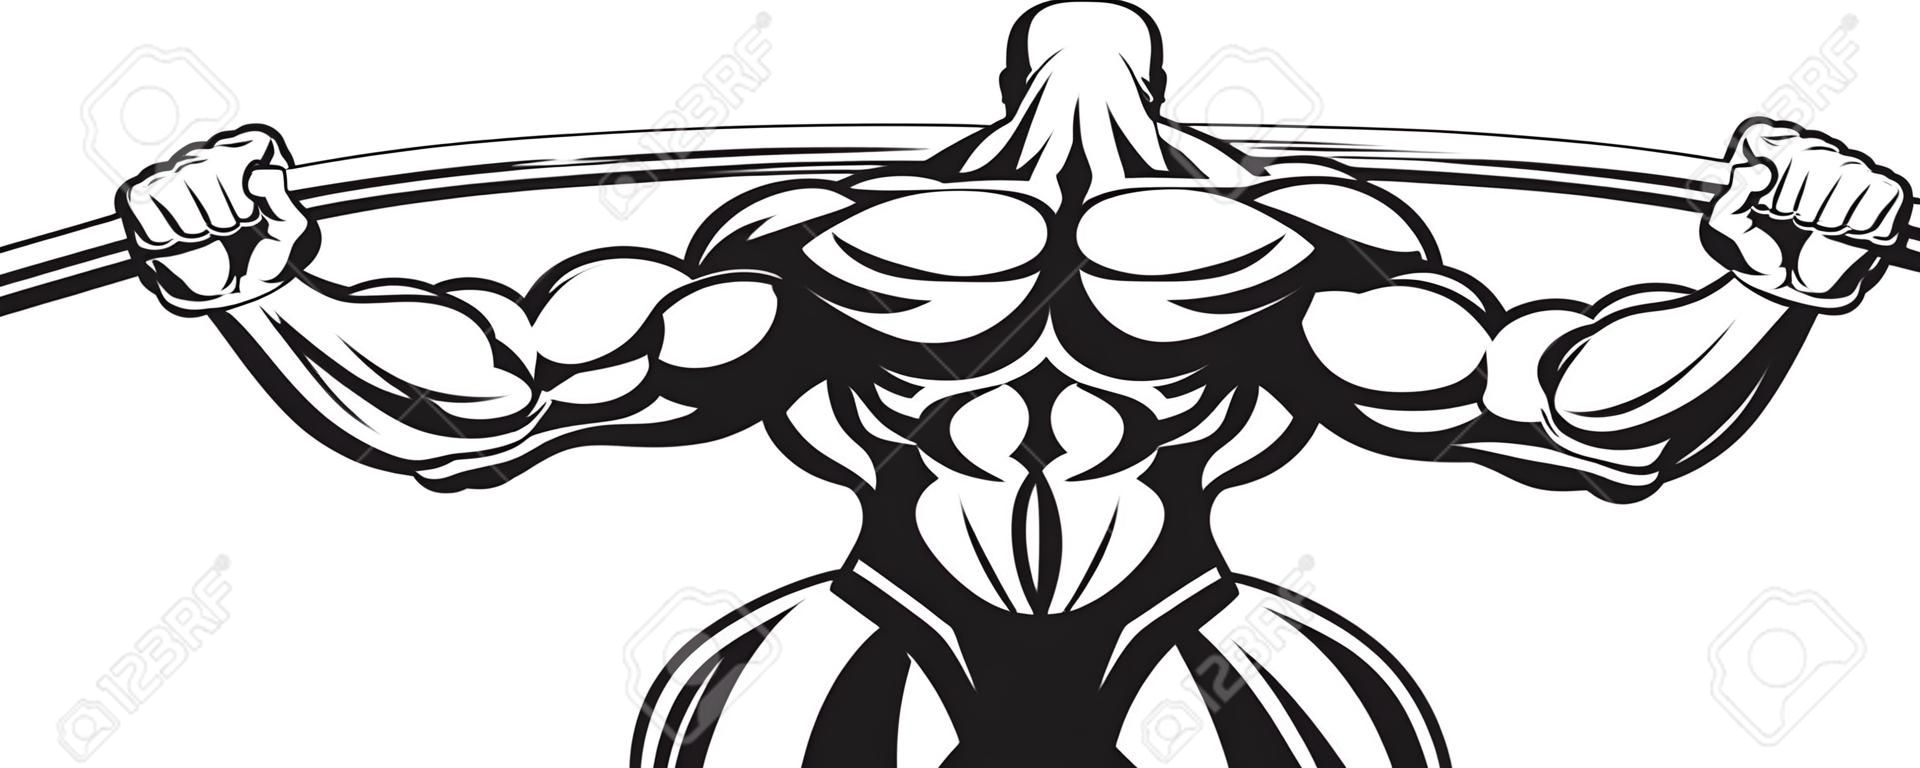 L'illustration d'un bodybuilder effectue un exercice avec une barre.